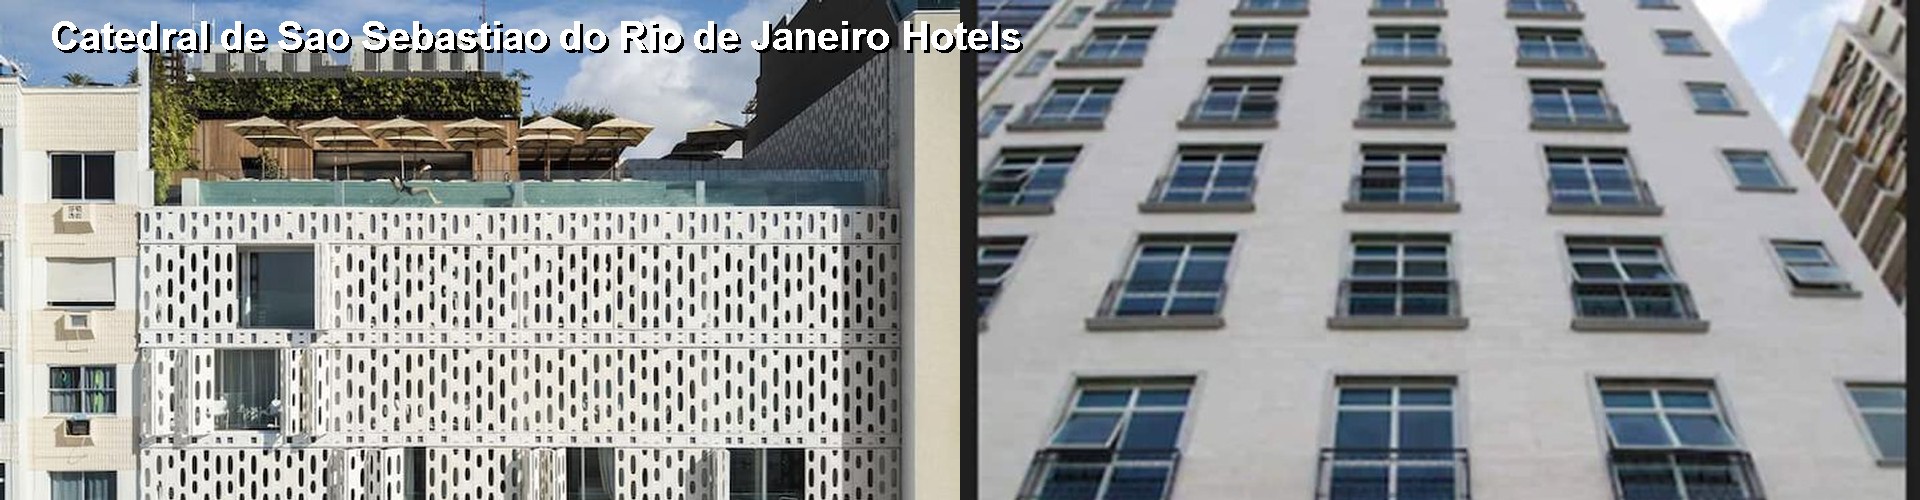 5 Best Hotels near Catedral de Sao Sebastiao do Rio de Janeiro